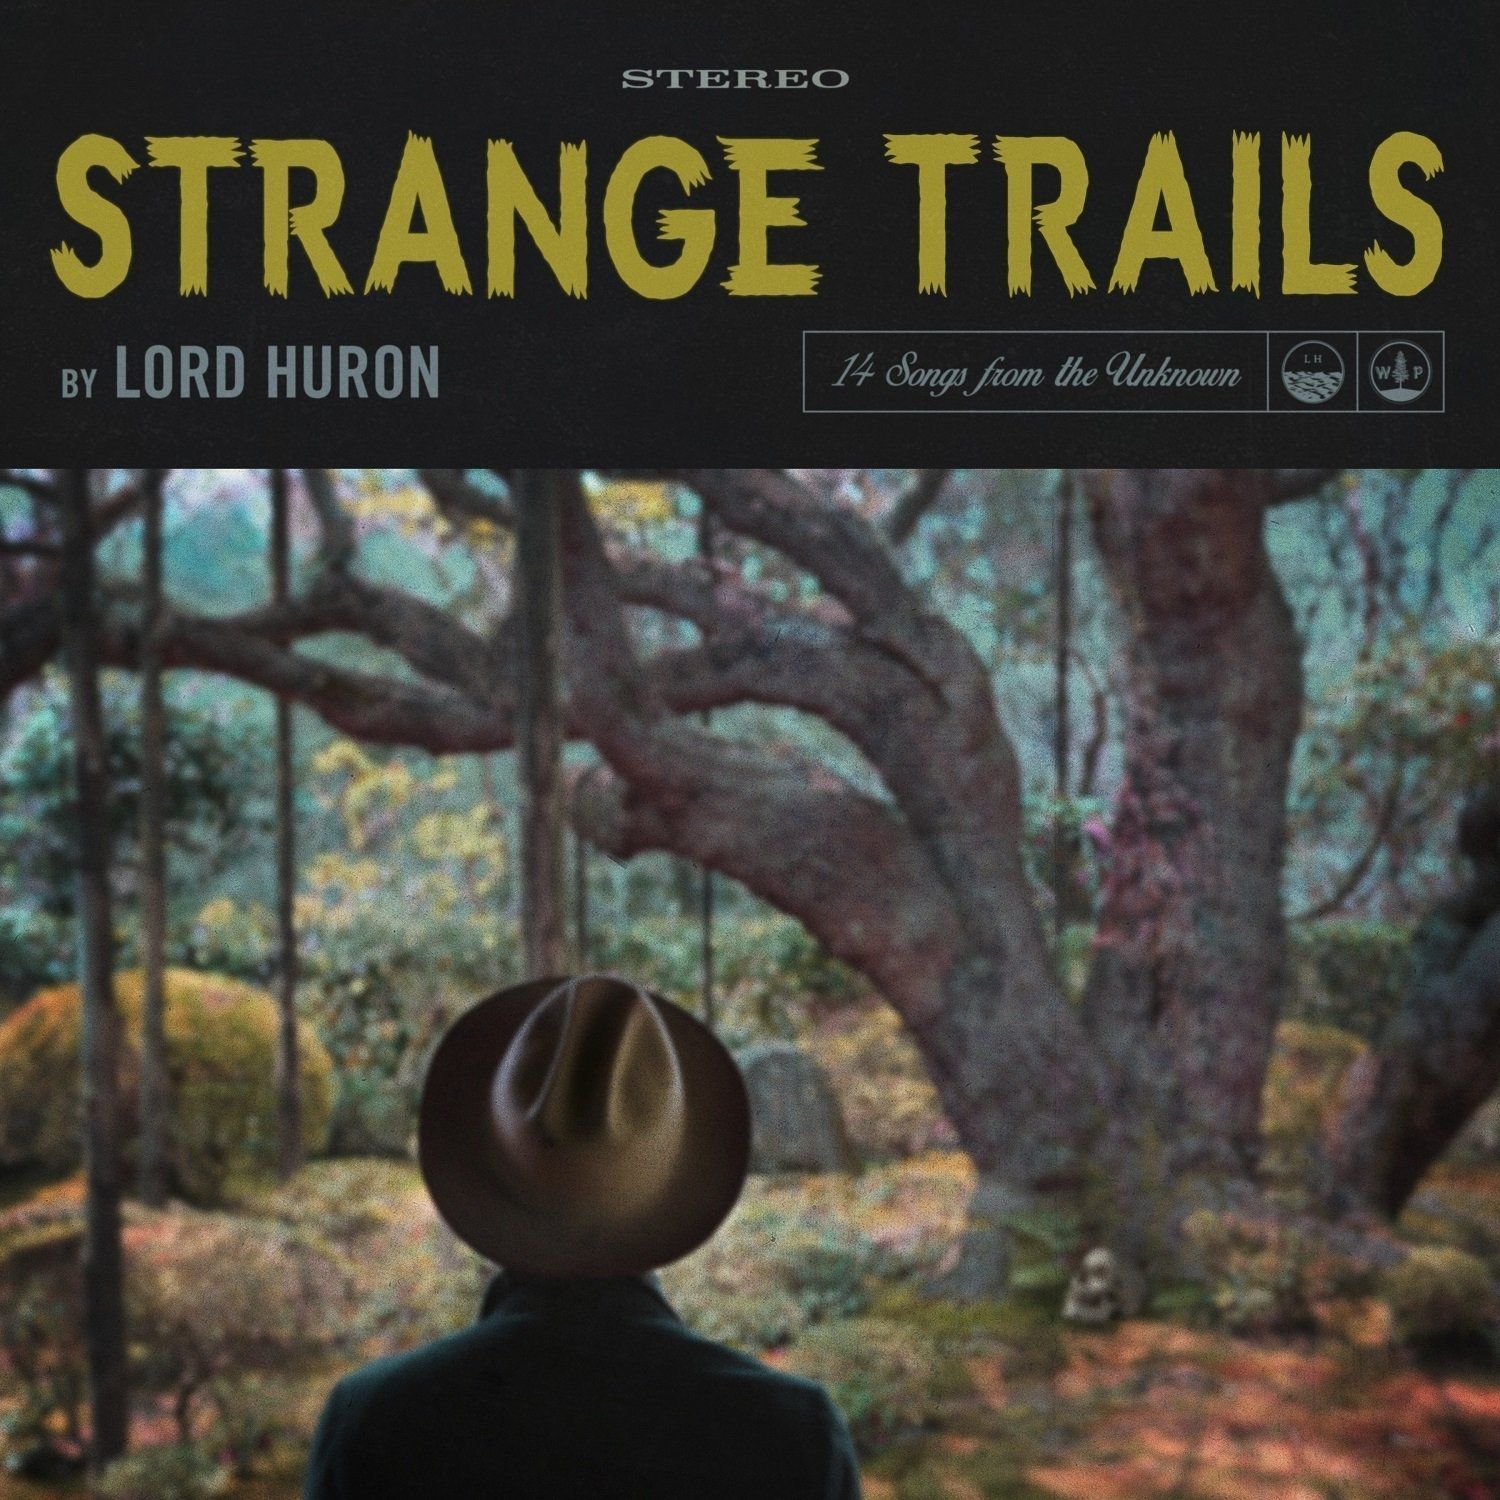 Imagem do álbum Strange Trails do(a) artista Lord Huron